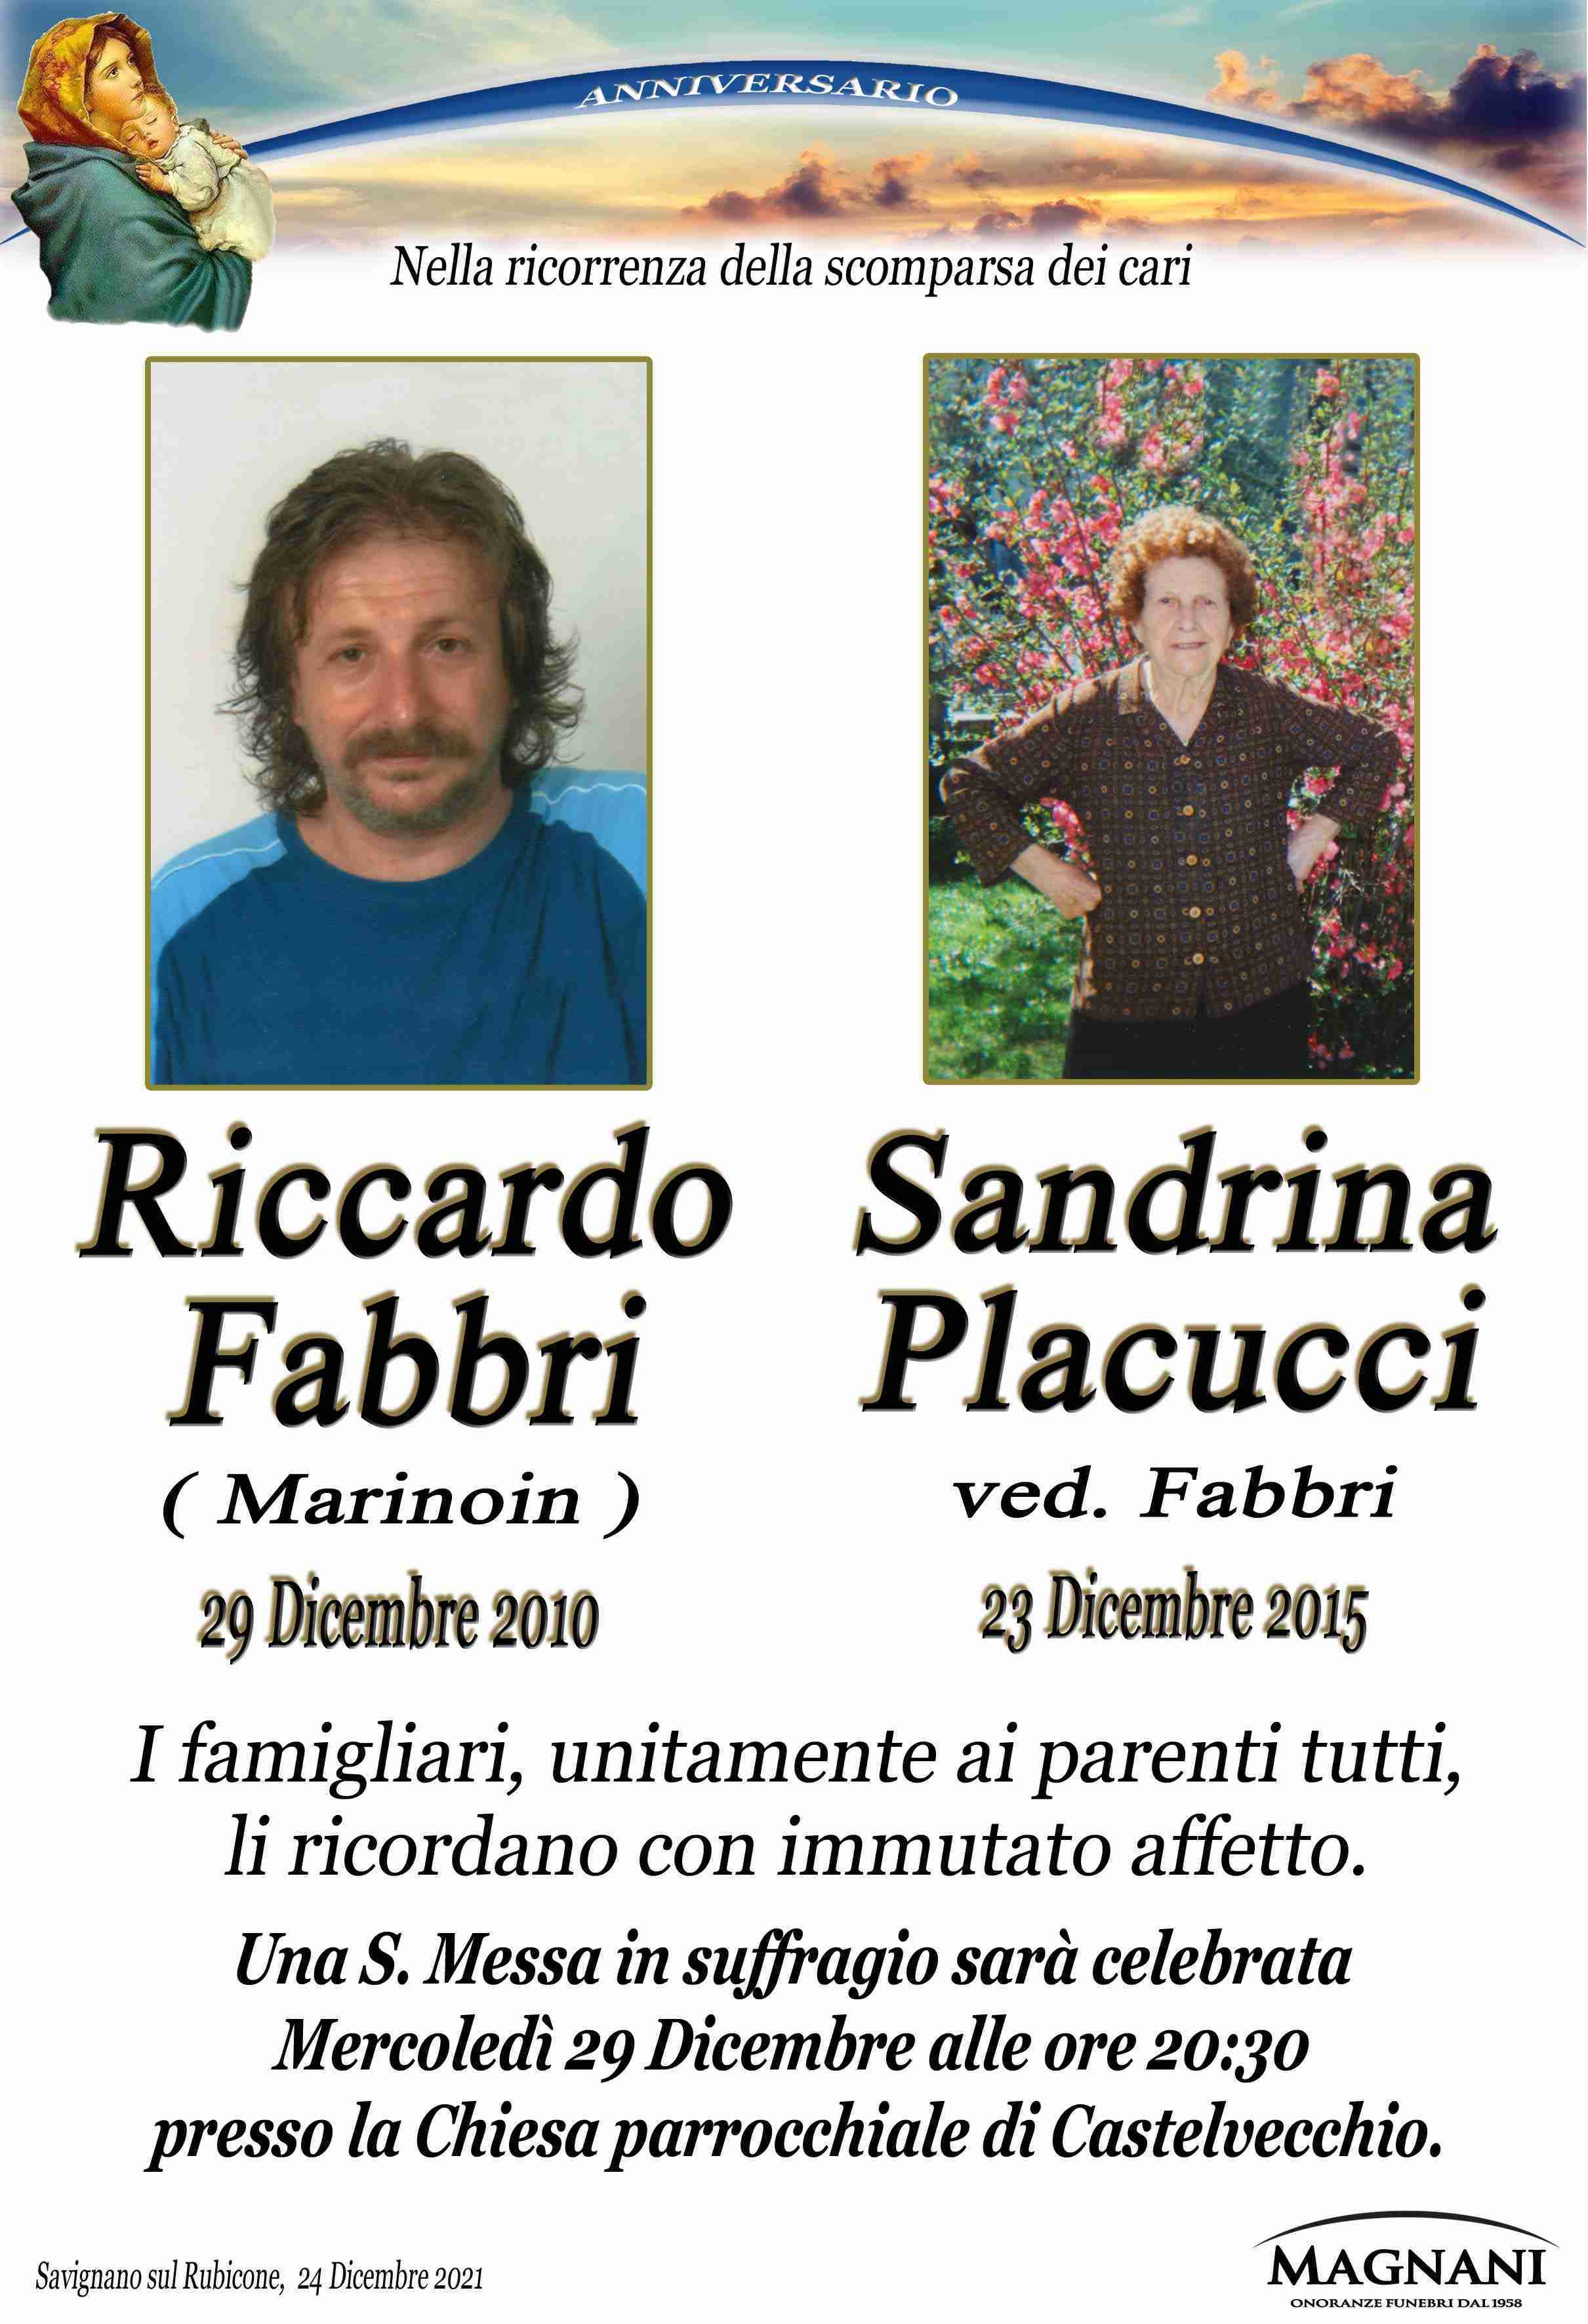 Riccardo Fabbri e Sandrina Placucci